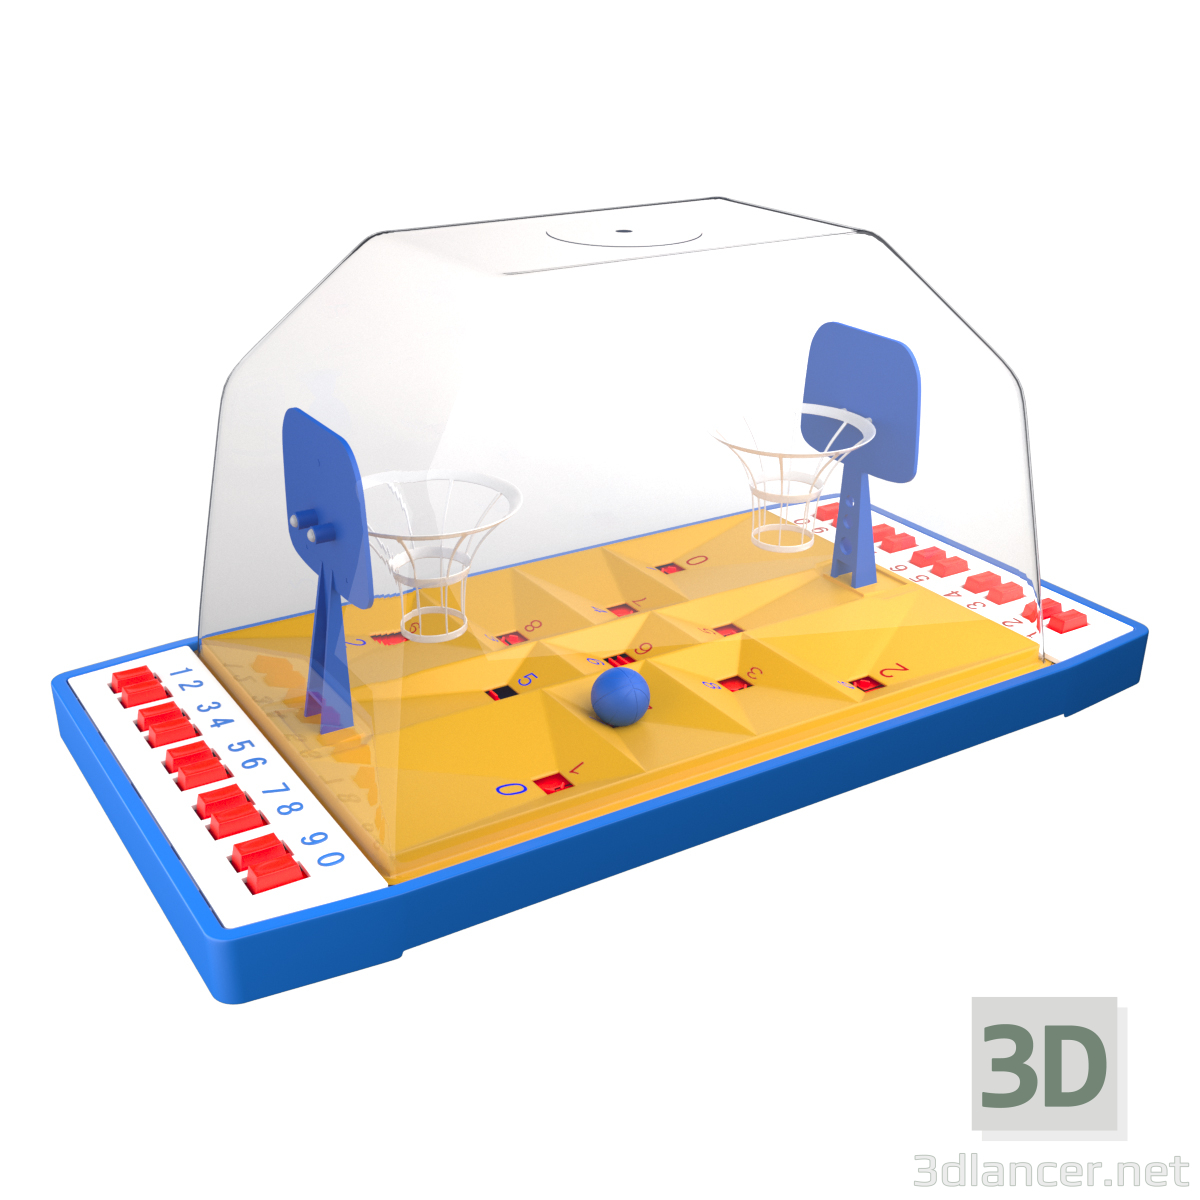 modello 3D di pallacanestro comprare - rendering